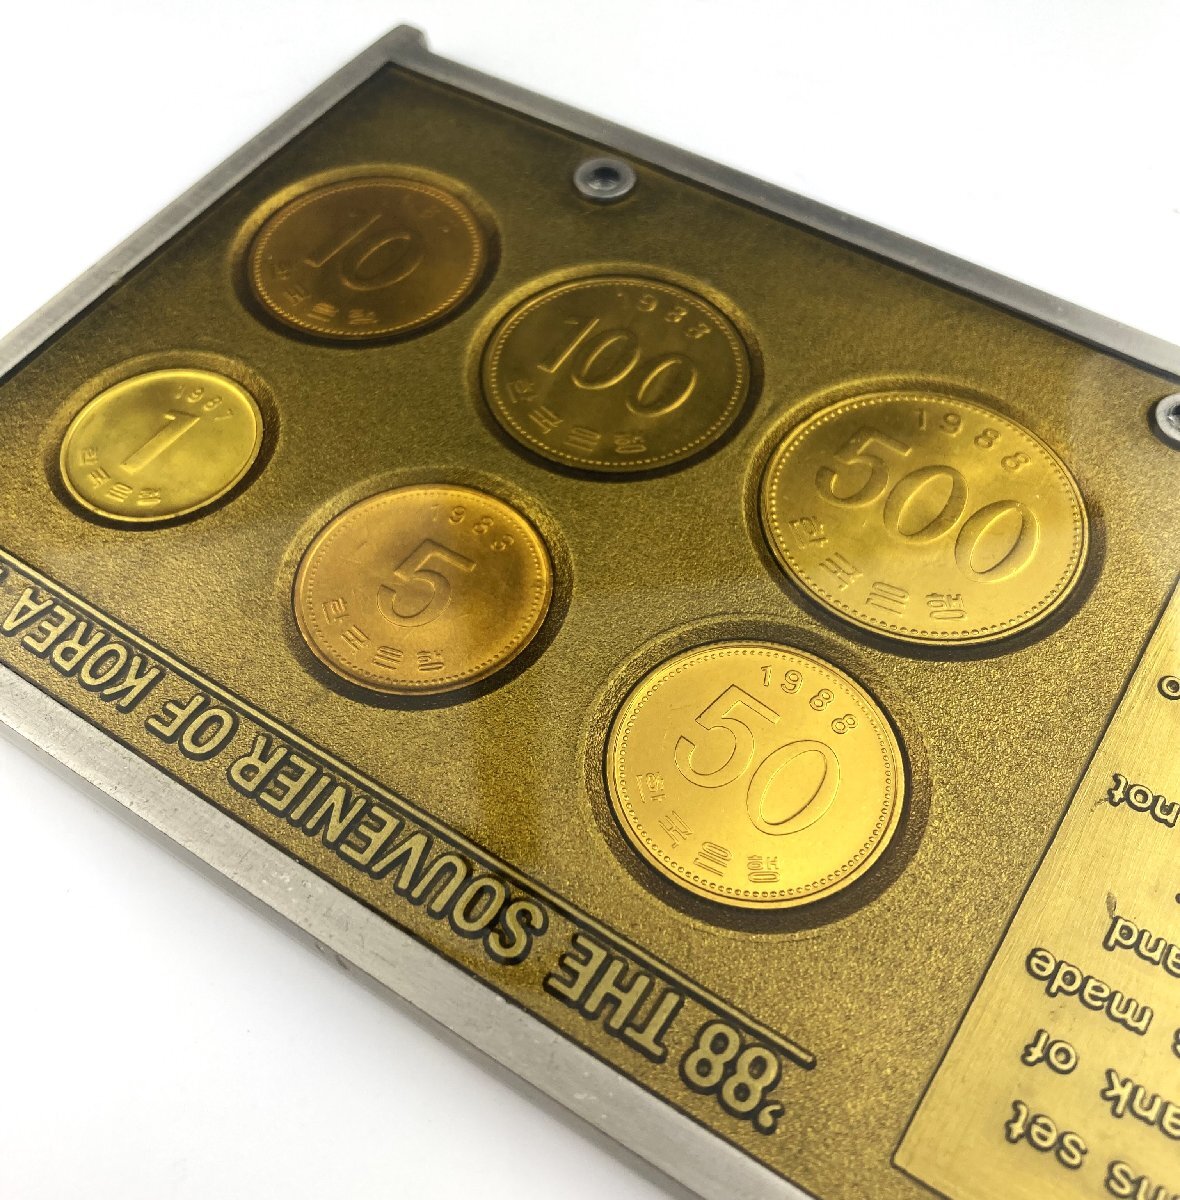 【77】【コレクター必見】韓国 COIN SET OF BANK OF KOREA 1985プルーフ硬貨セット 1988年ソウルオリンピック 韓国切手 記念硬貨_画像4